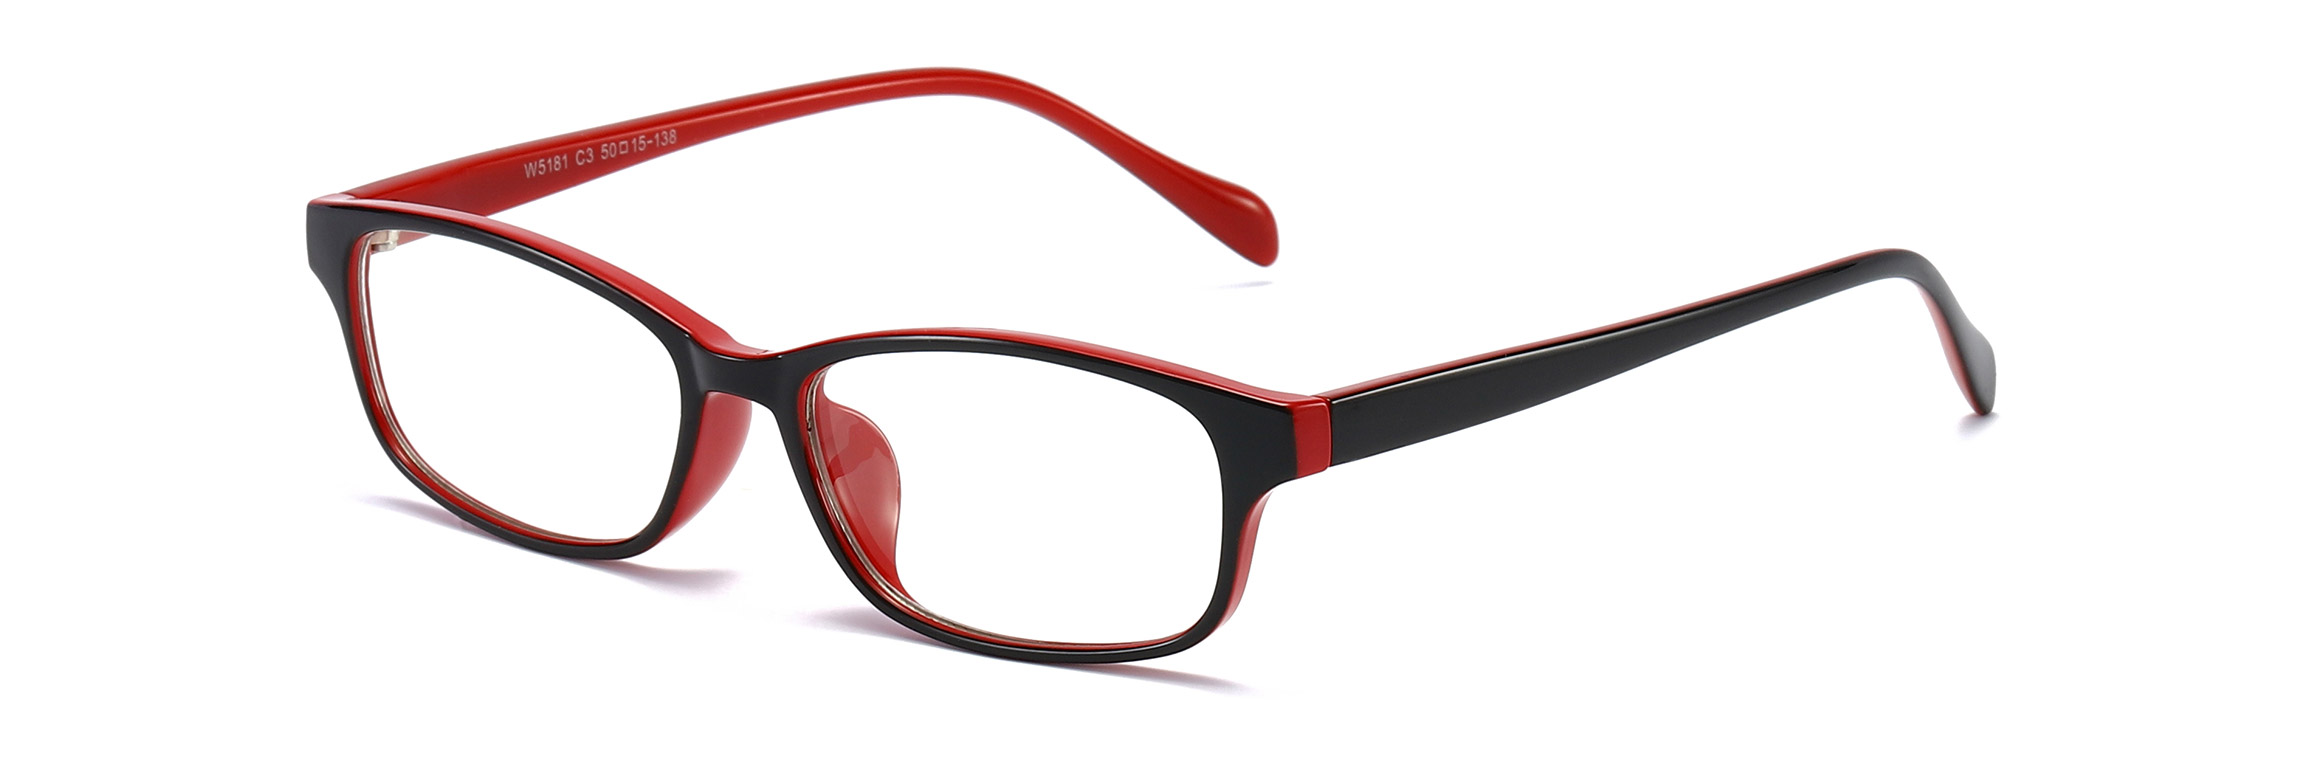 打造高品质眼镜的负离子眼镜工厂